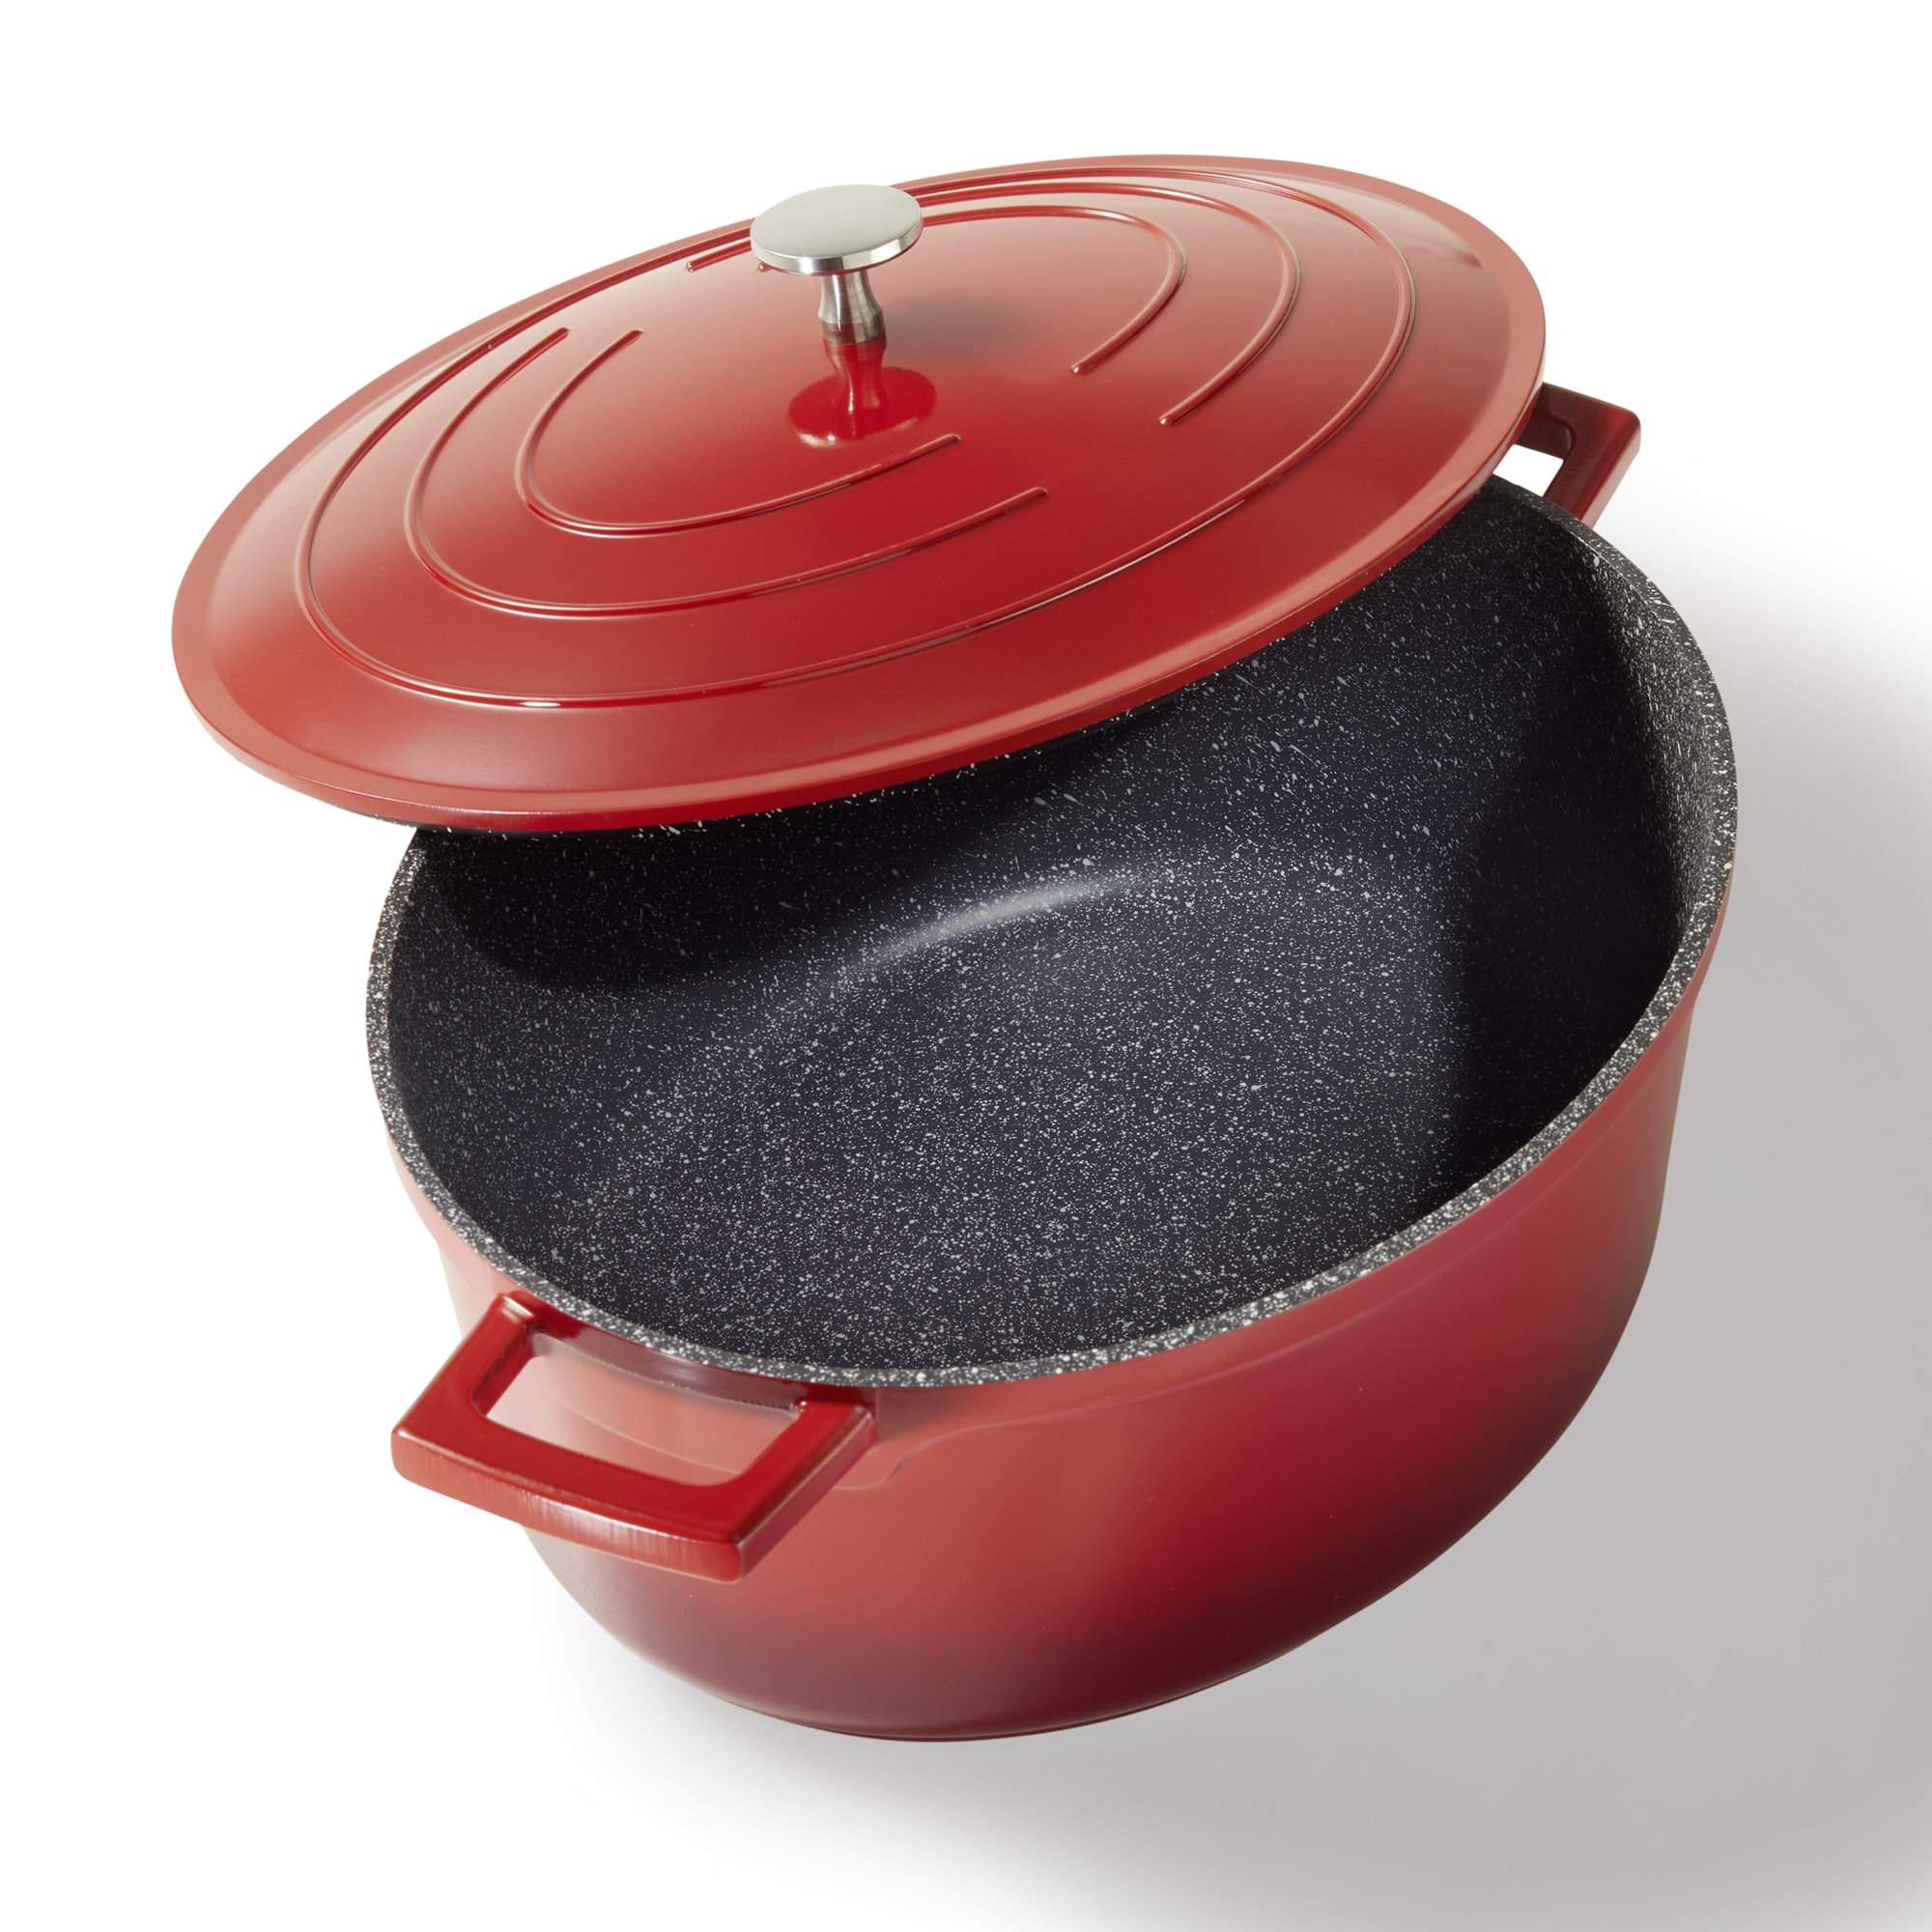 STONELINE® Gourmet asador 32x25 cm con tapa, apto para horno e inducción, antiadherente, rojo cereza